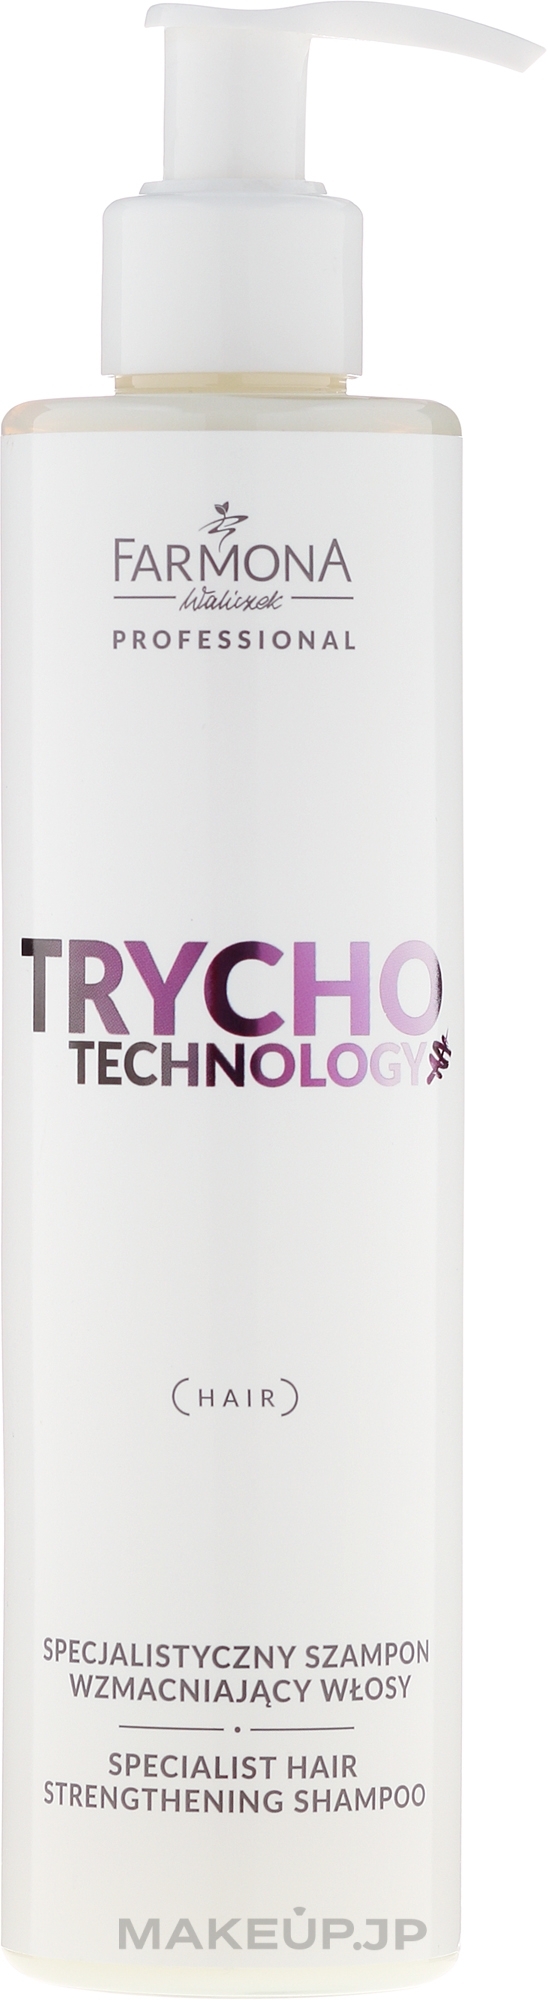 Specialized Strengthening Shampoo - Farmona Trycho Technology Specialist Hair Strengthening Shampoo — photo 250 ml